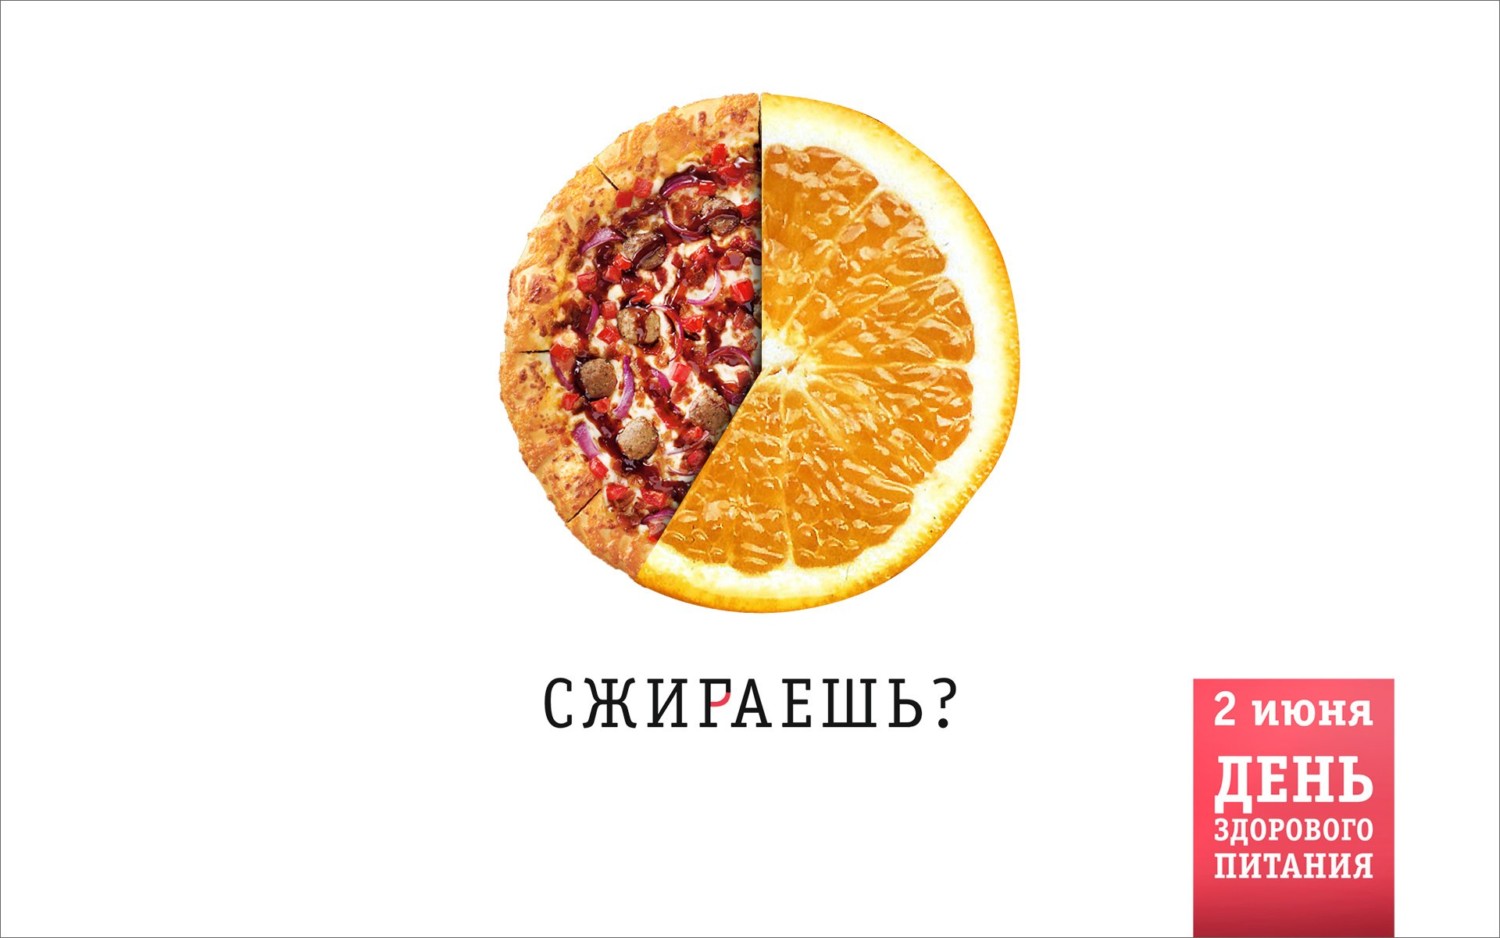 Сжирать или сжигать. В Барнауле создали социальную рекламу за здоровое питание